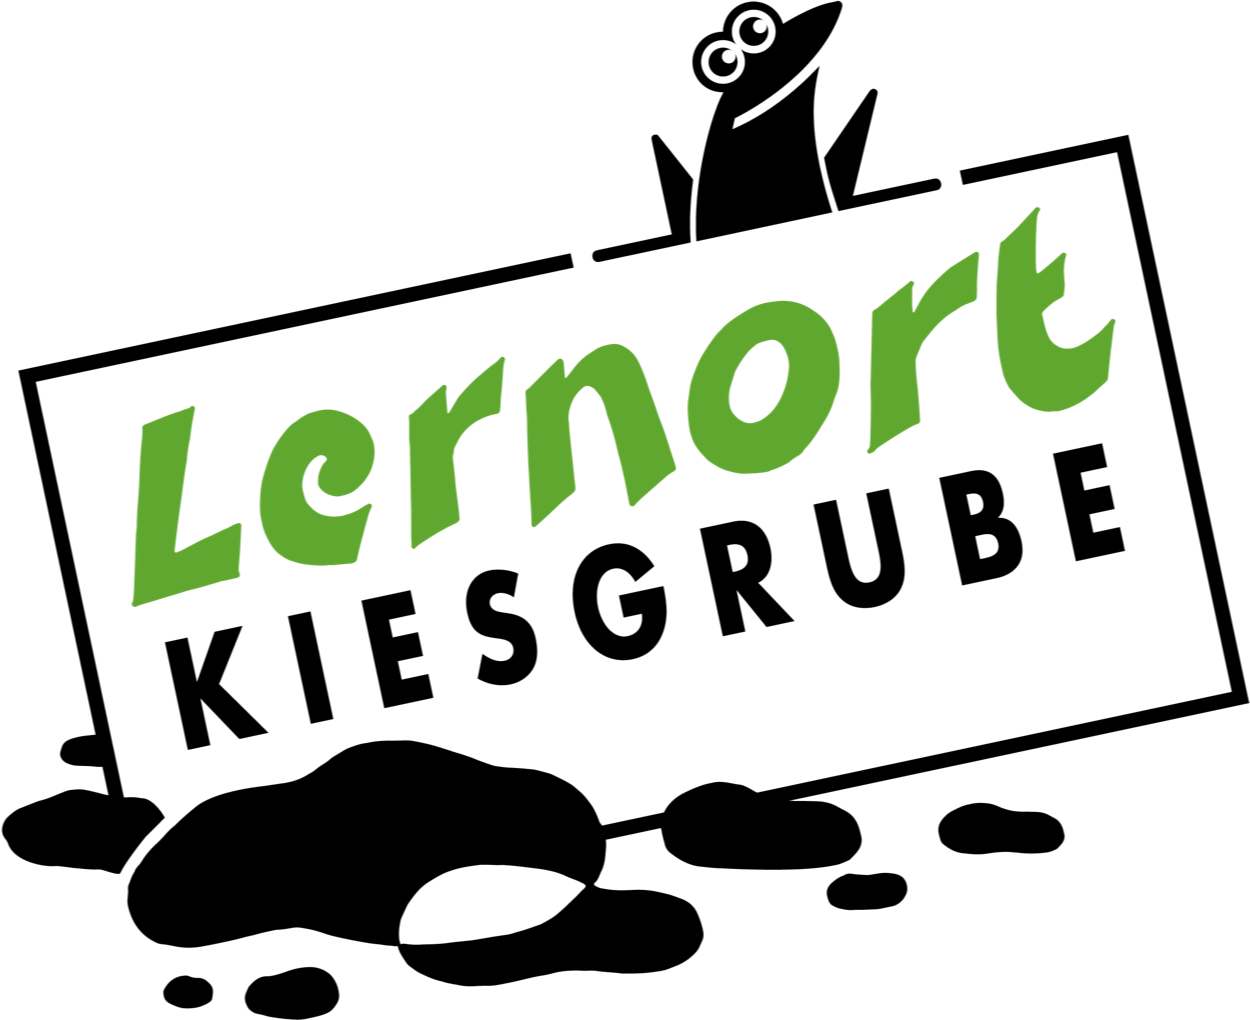 LernortKiesgrube